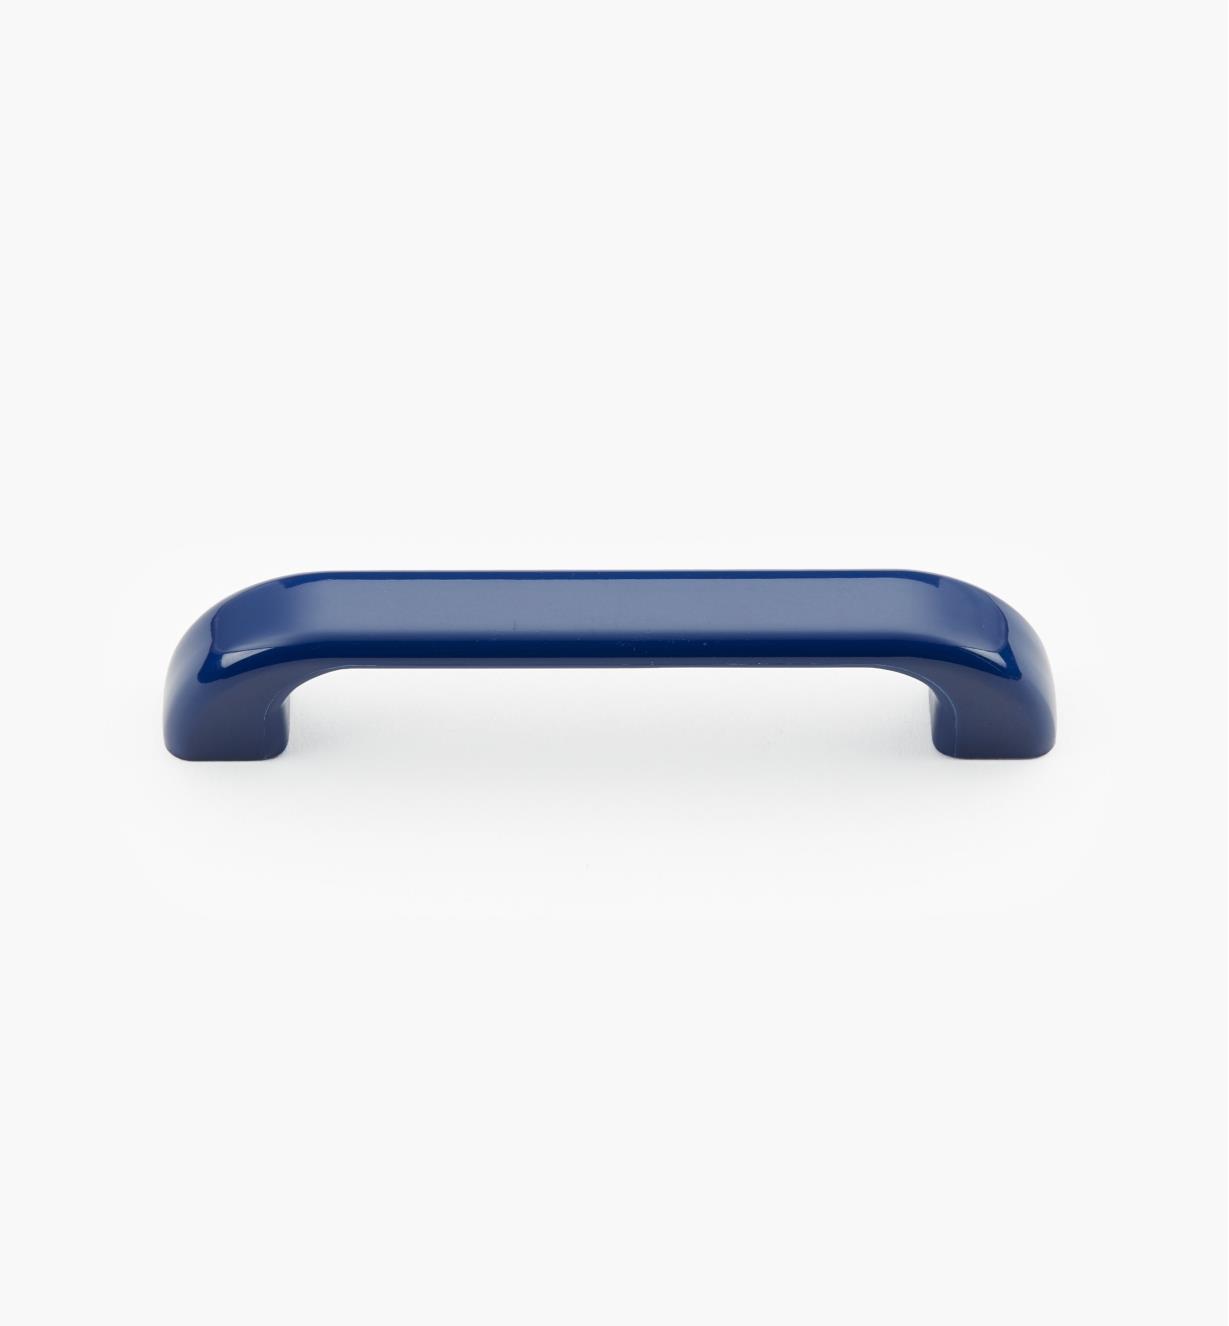 00W3616 - Poignée-fil ovale en plastique, bleu arc-en-ciel, 4 5/8 po